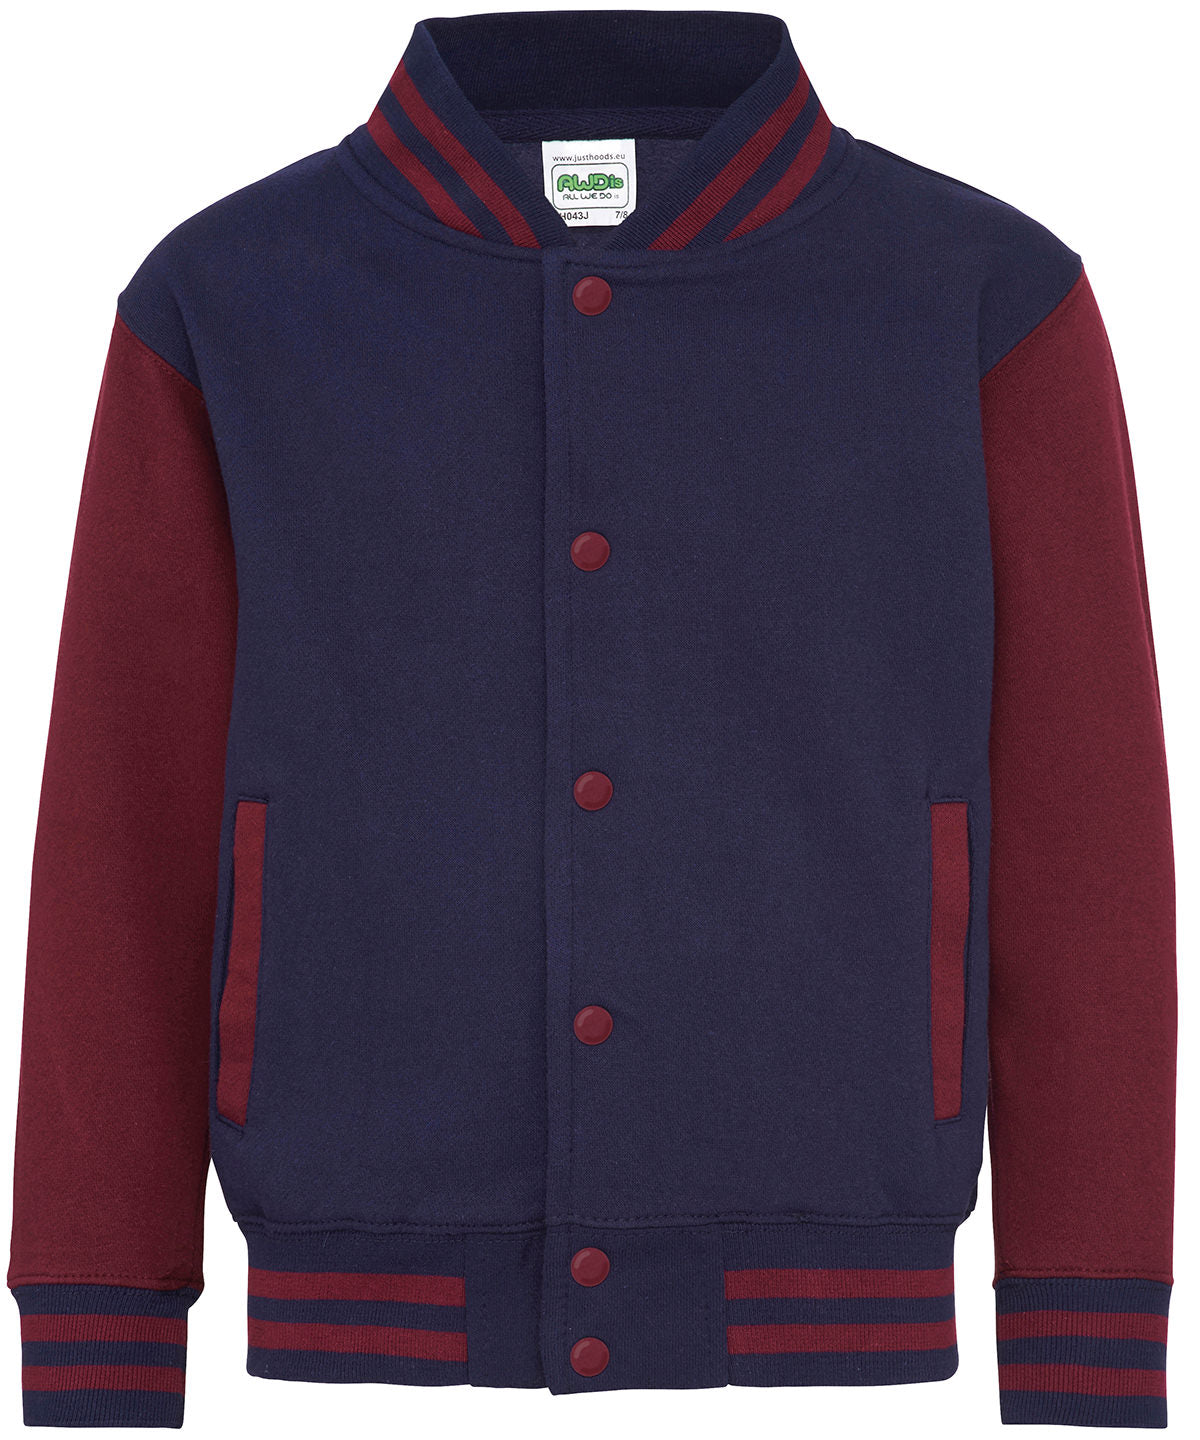 Personalised Jackets - Mid Red AWDis Just Hoods Kids varsity jacket